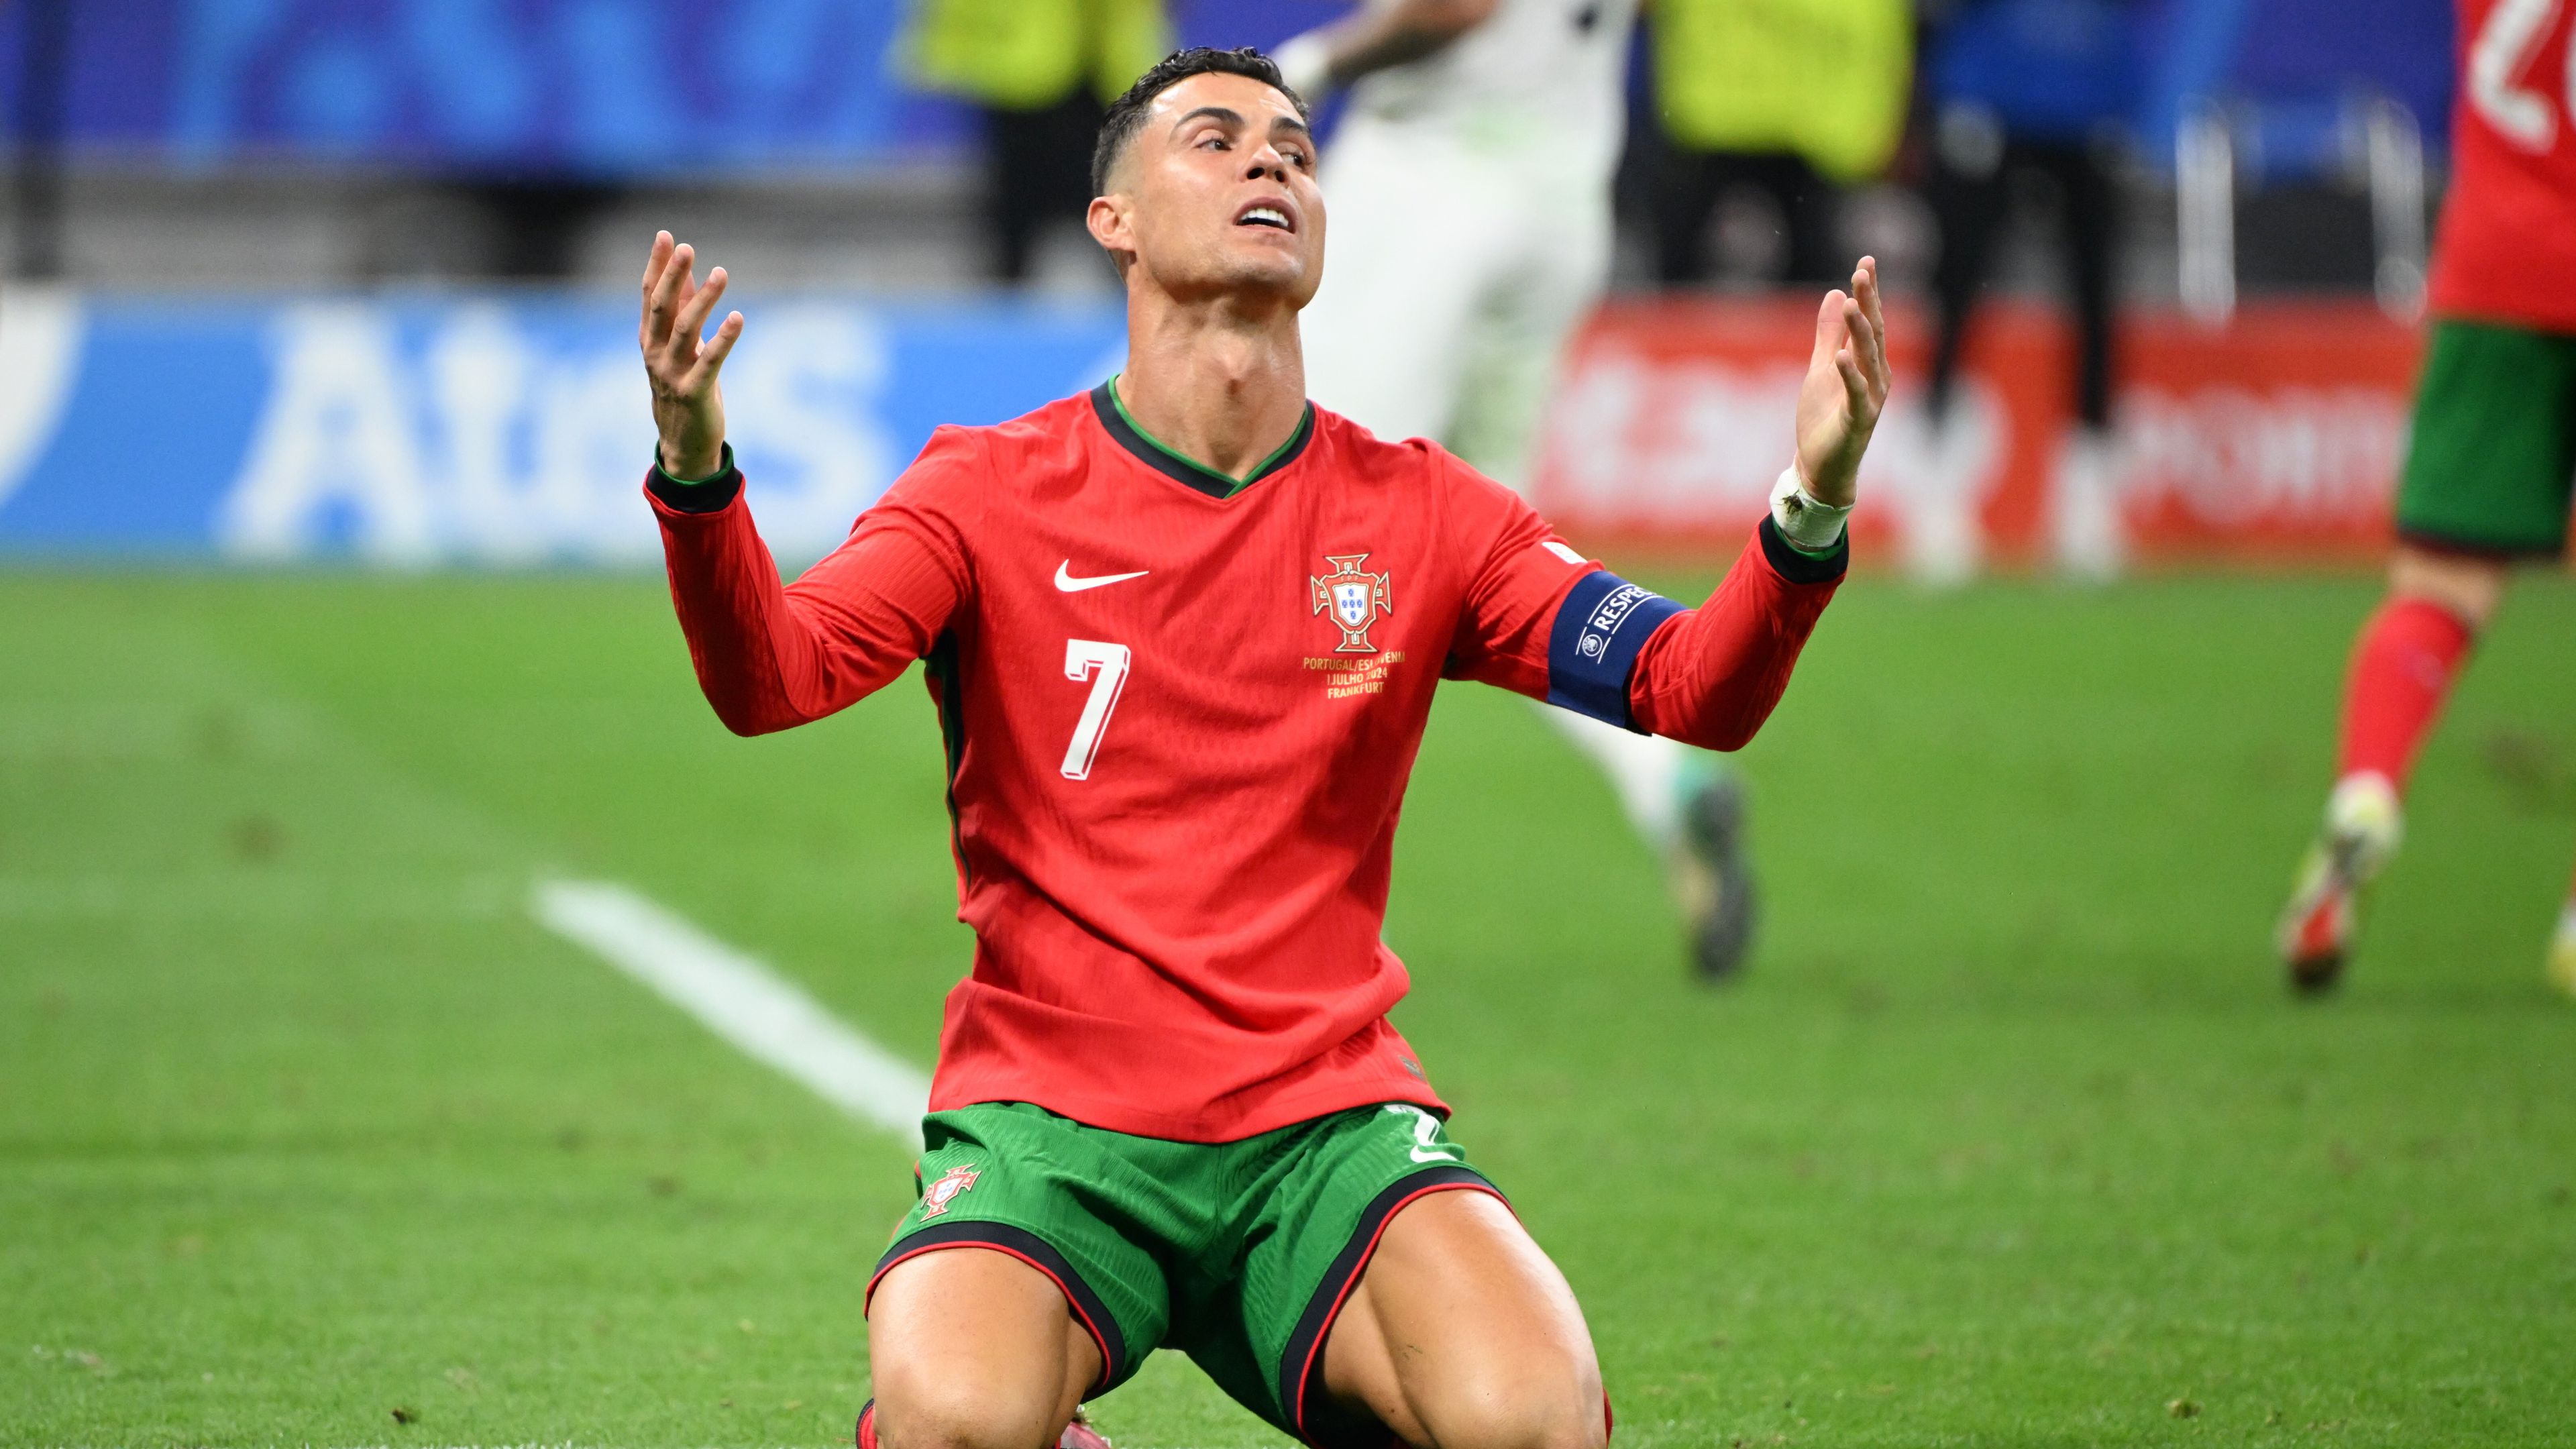 A BBC emlékeztette nézőit, hogy Cristiano Ronaldo kihagyott egy tizenegyest Szlovénia ellen